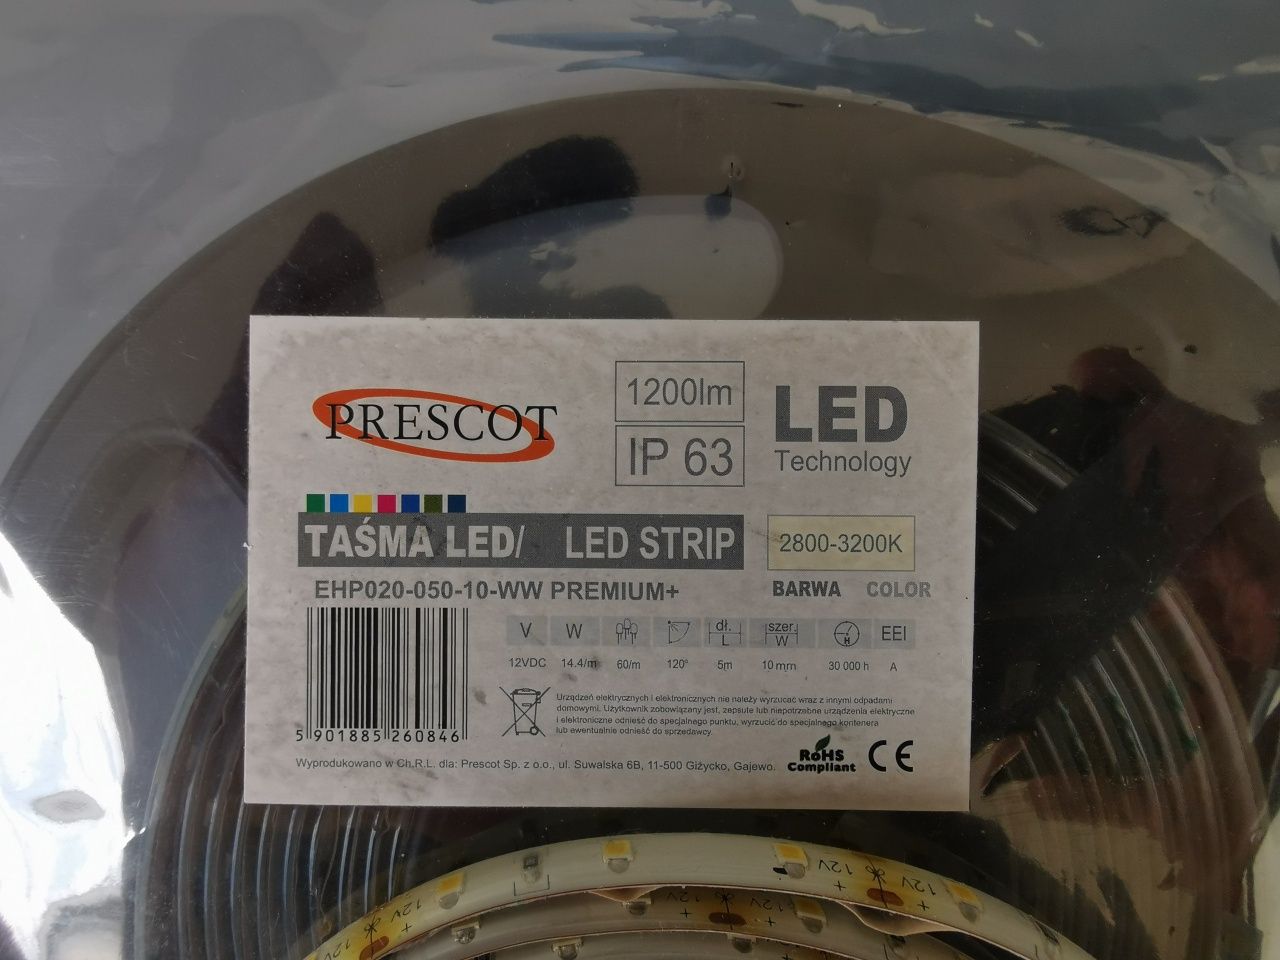 Tasma LED Prescot premium 14.4W/m 12V IP67 3000K 5m